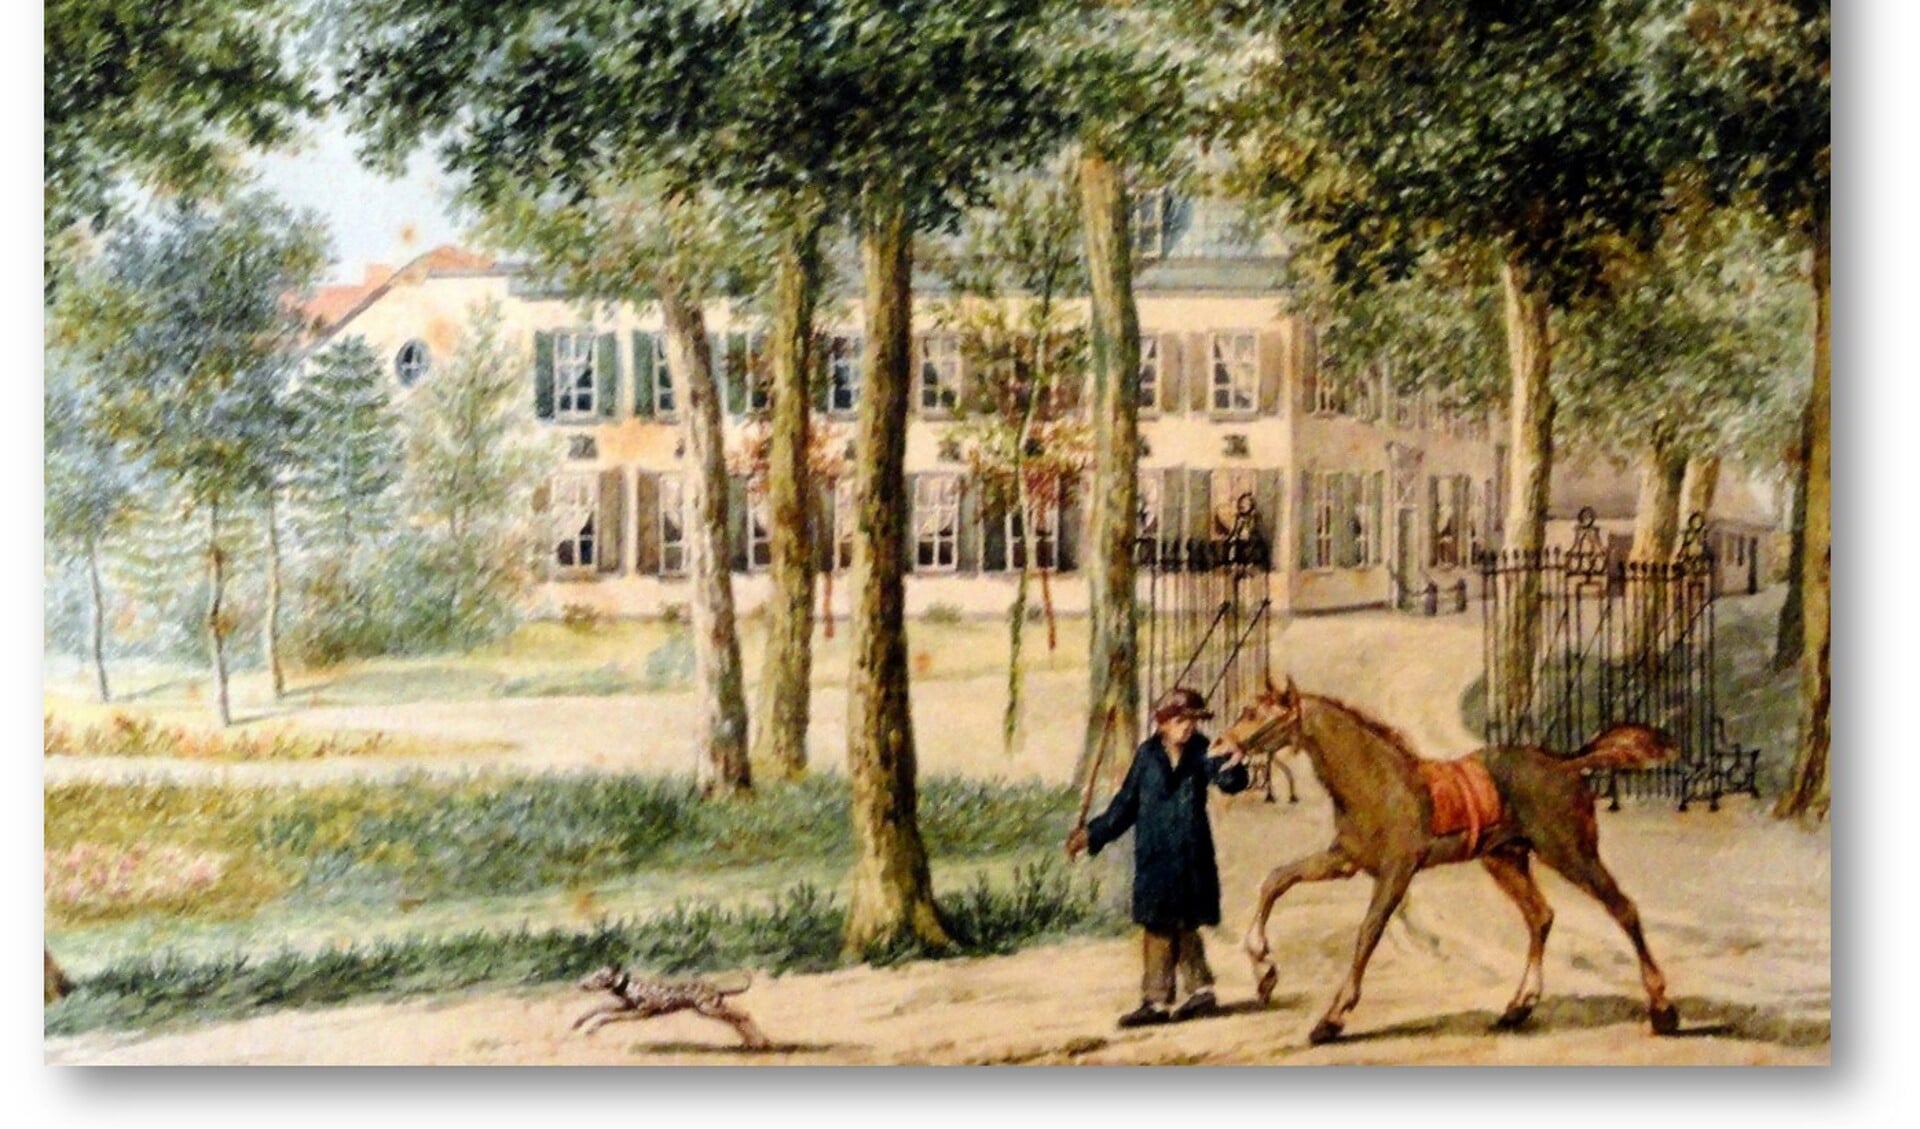 Landgoed Persijn in 1827. (Utrechts Archief.)